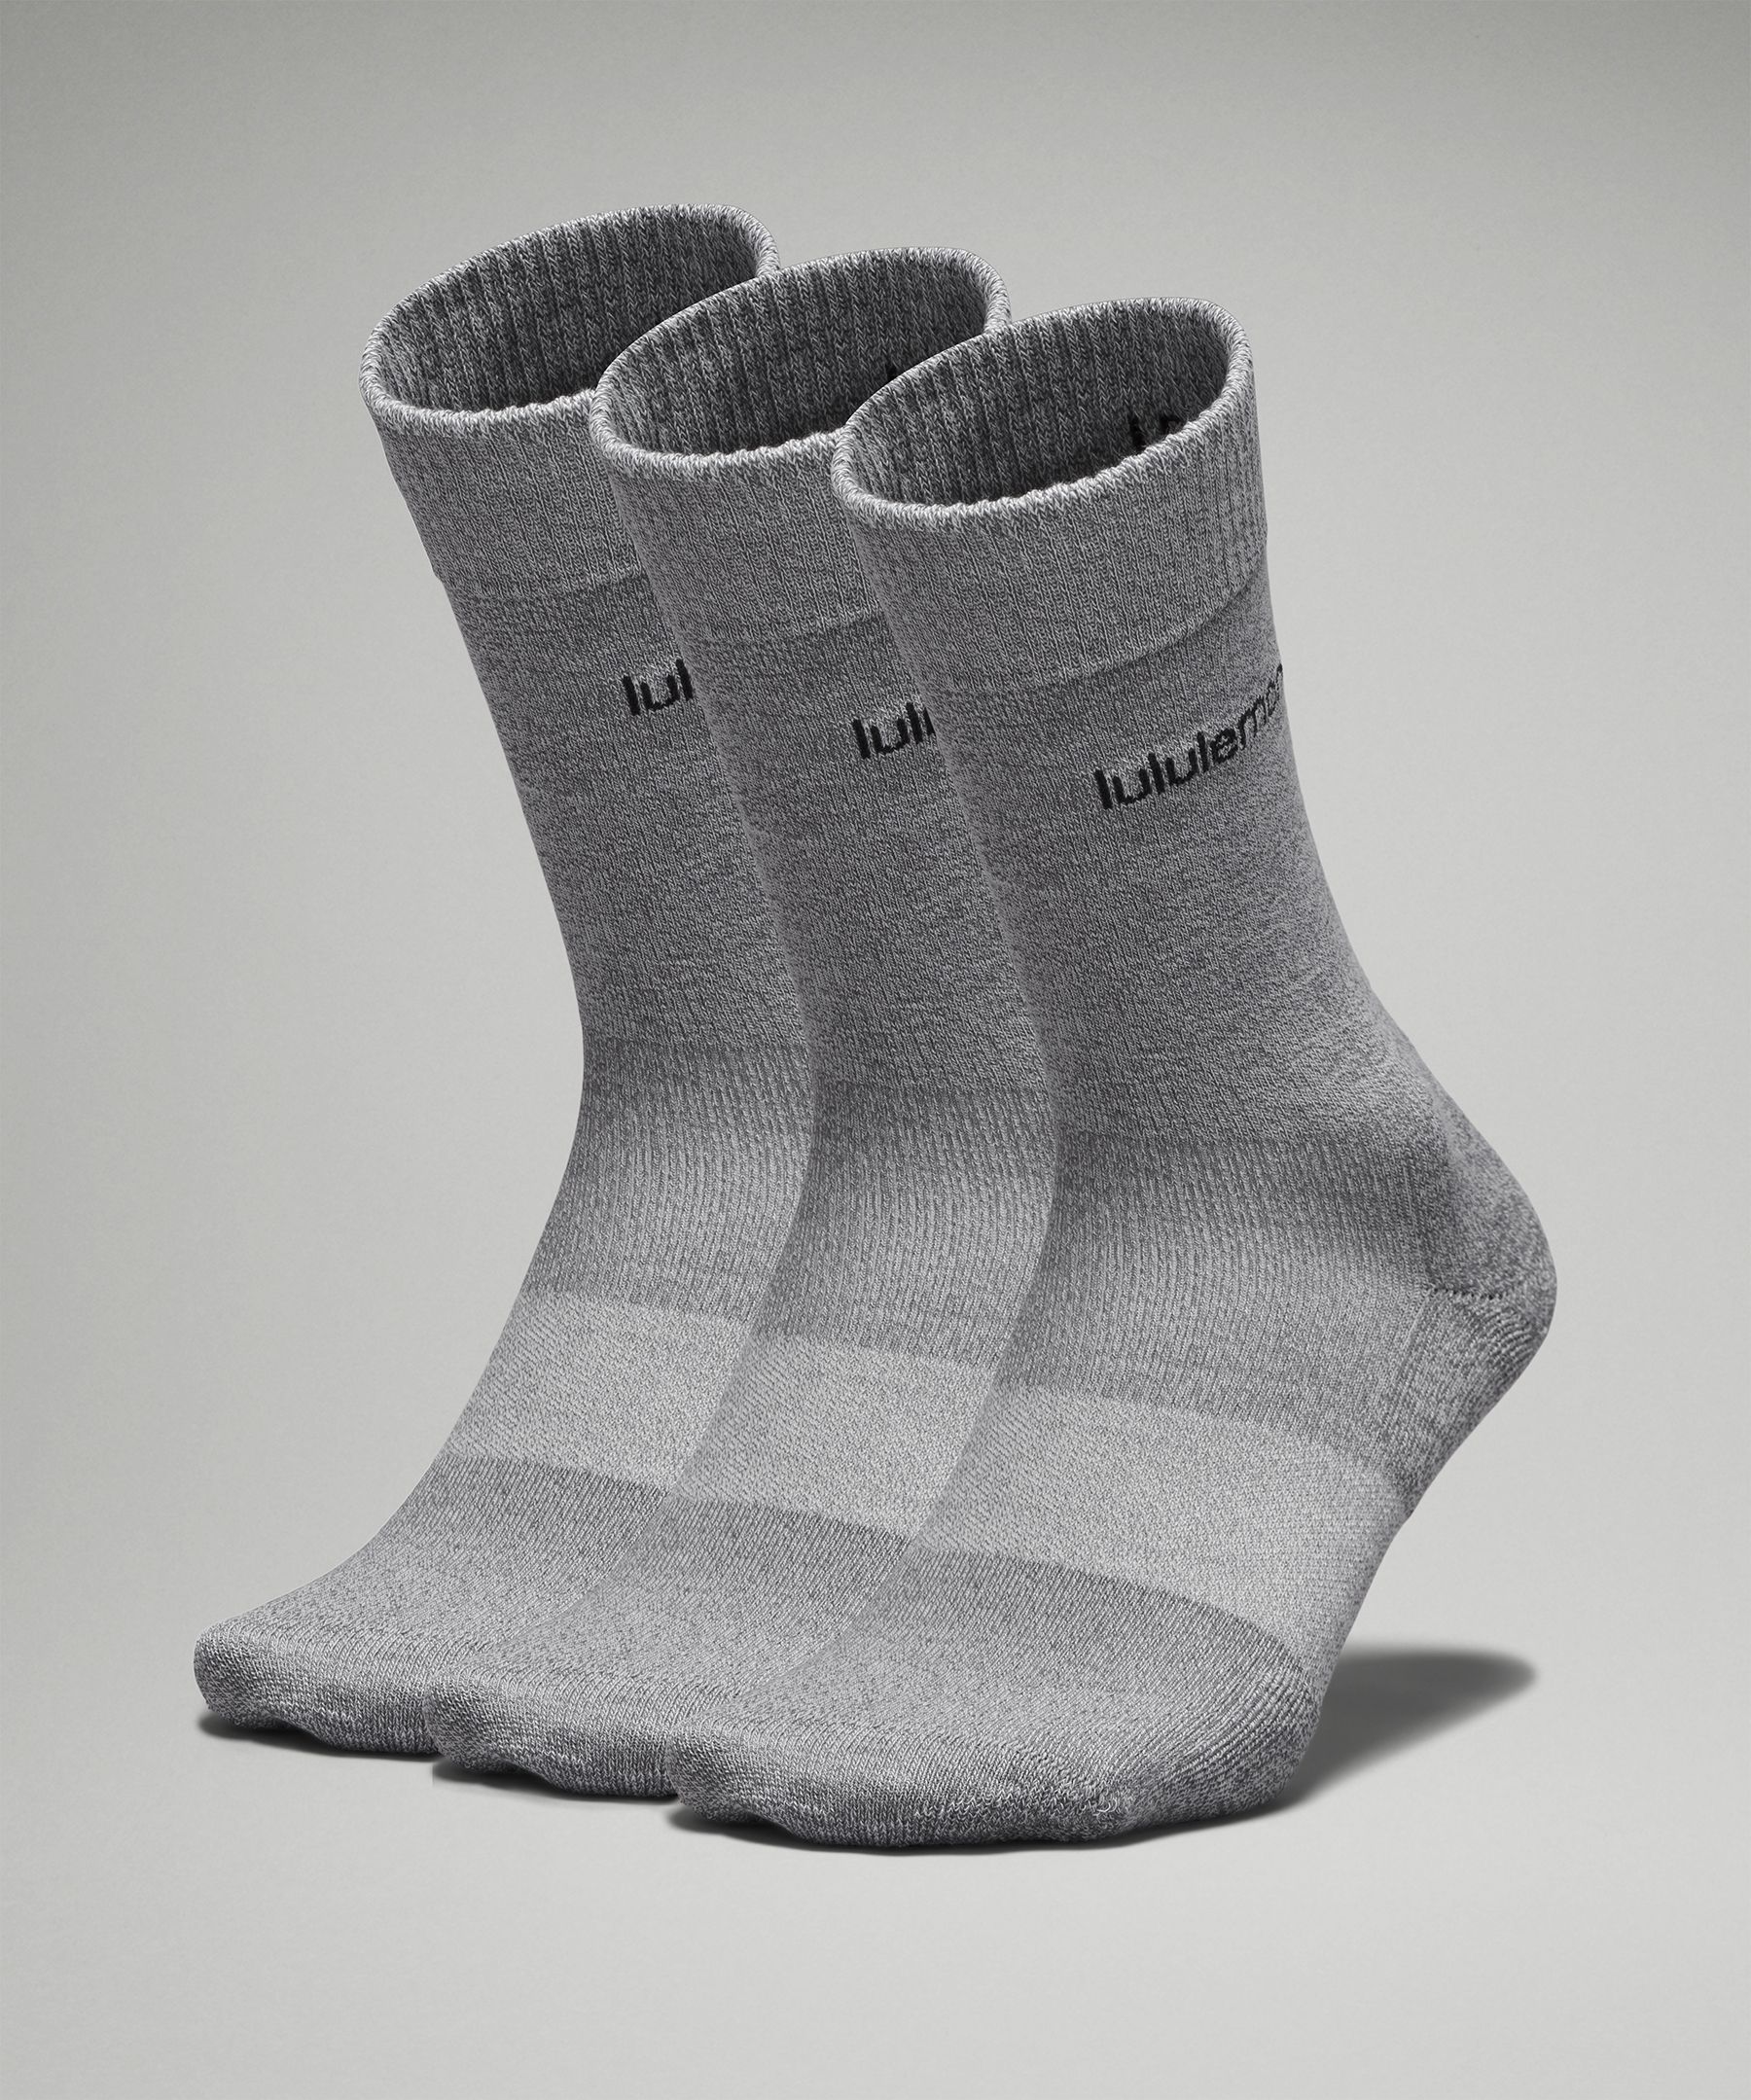 Lululemon Daily Stride Comfort Crew Socks 3 Pack